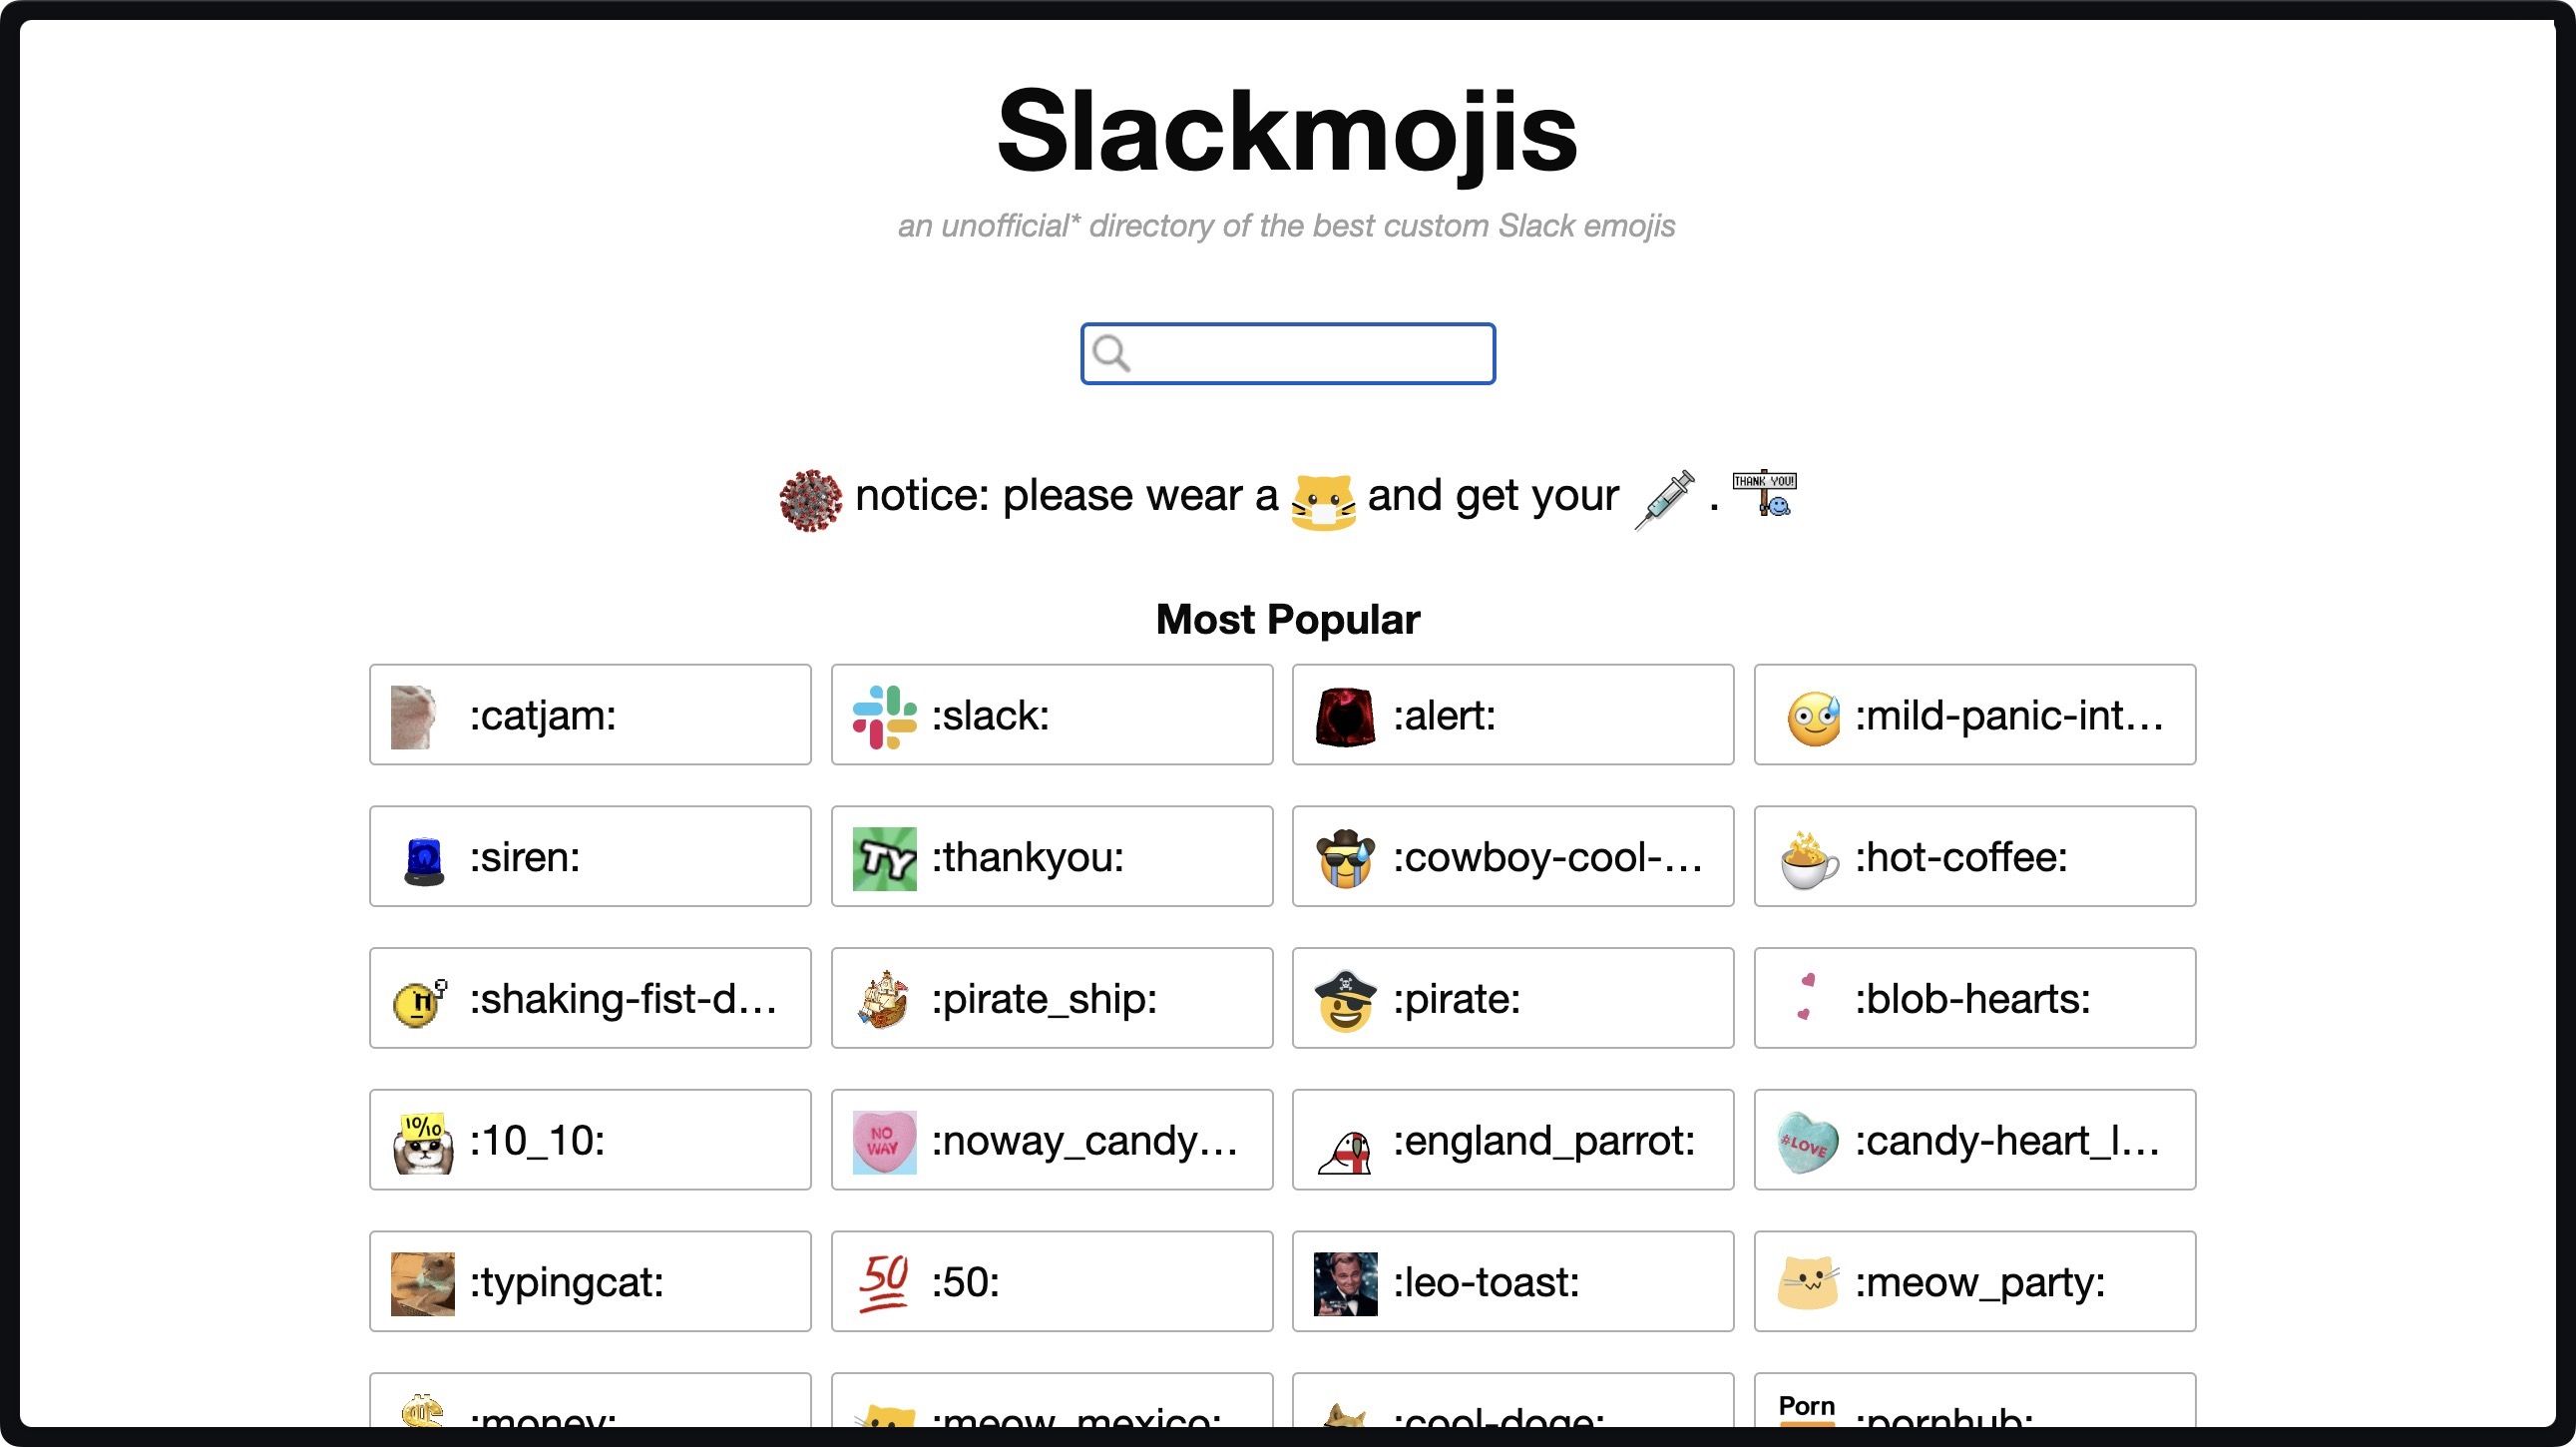 Captura de tela da página inicial do Slackmojis